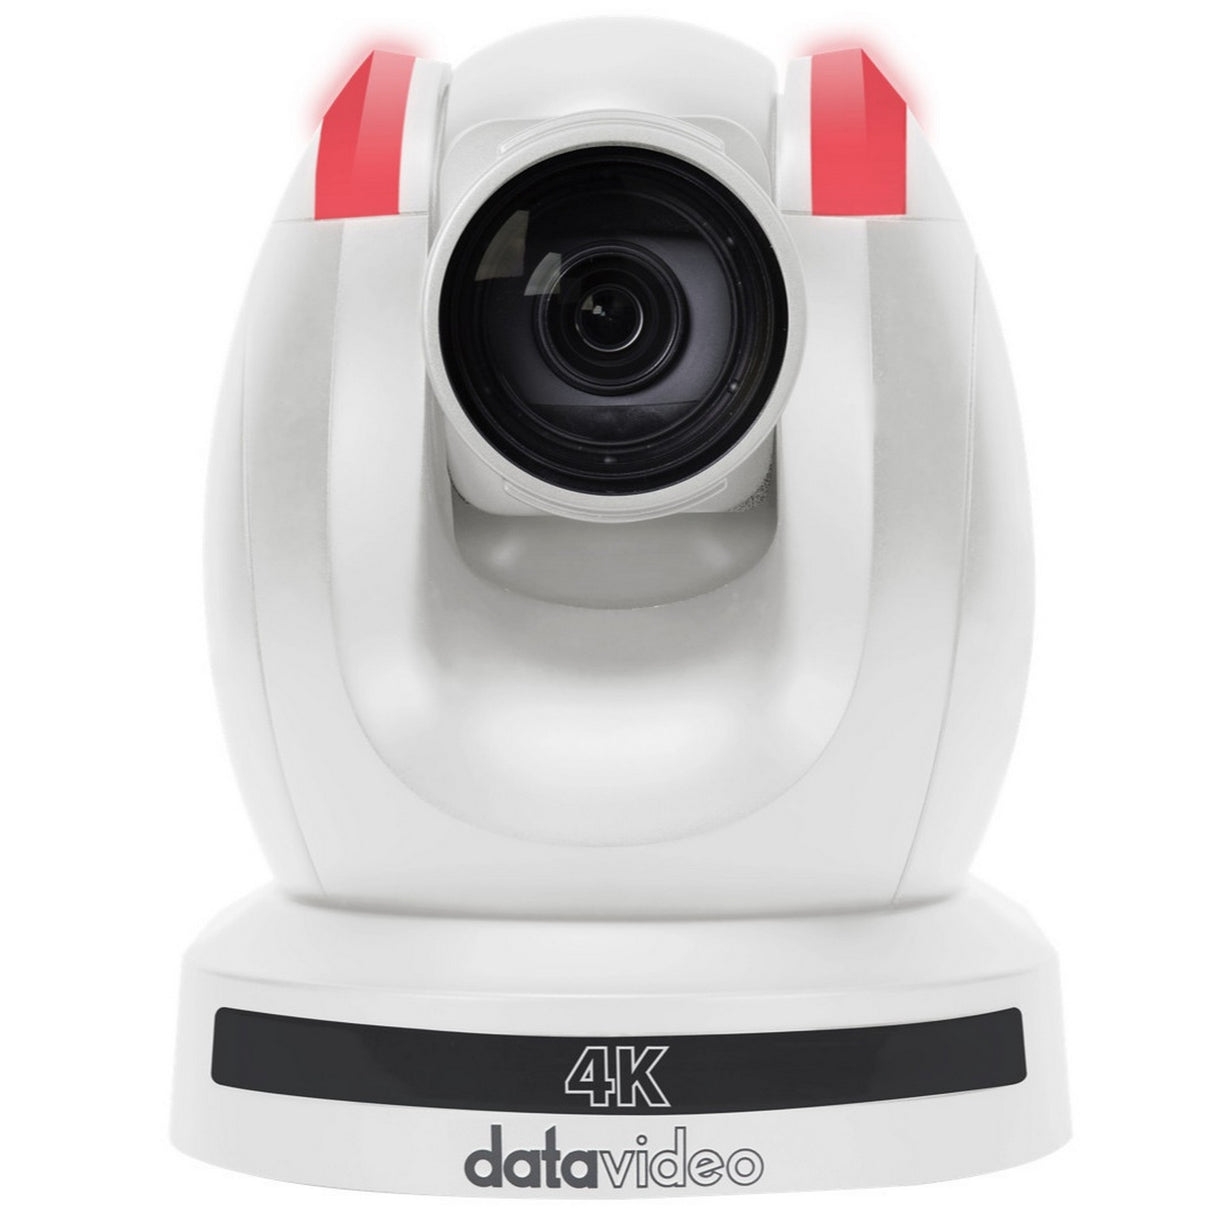 Datavideo PTC-305NDIW 4K 20x Tracking NDI PTZ Camera, White